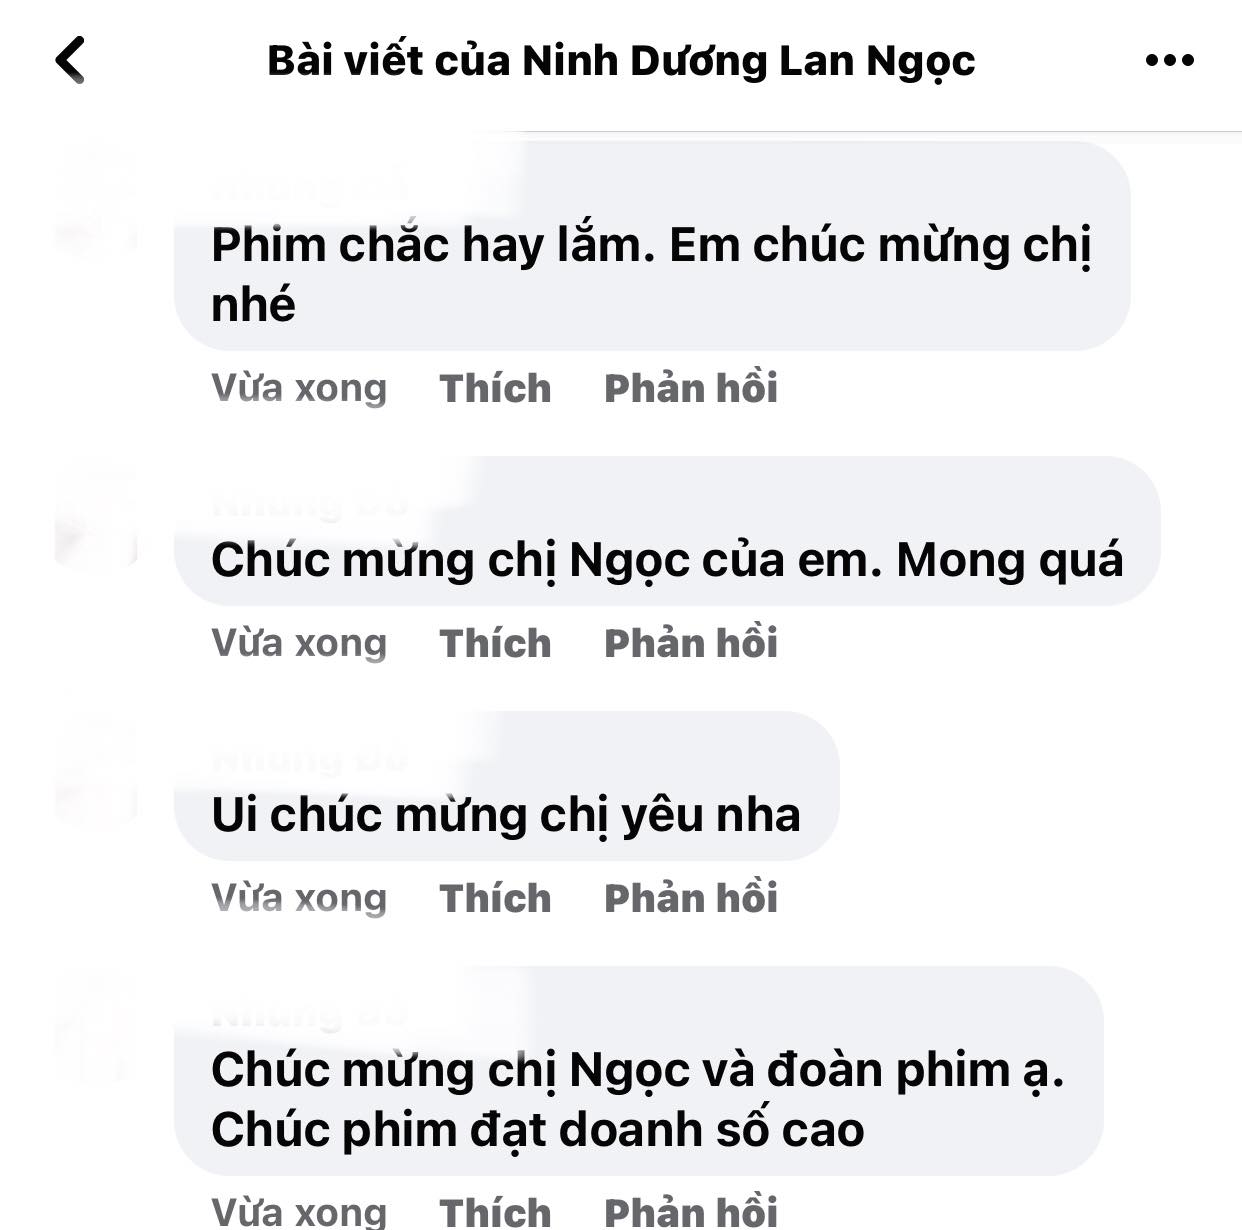 Ninh-duong-lan-ngoc-vua-thong-bao-tin-vui-sau-nhieu-thang-cho-doi-cdm-no-nuc-chuc-mung